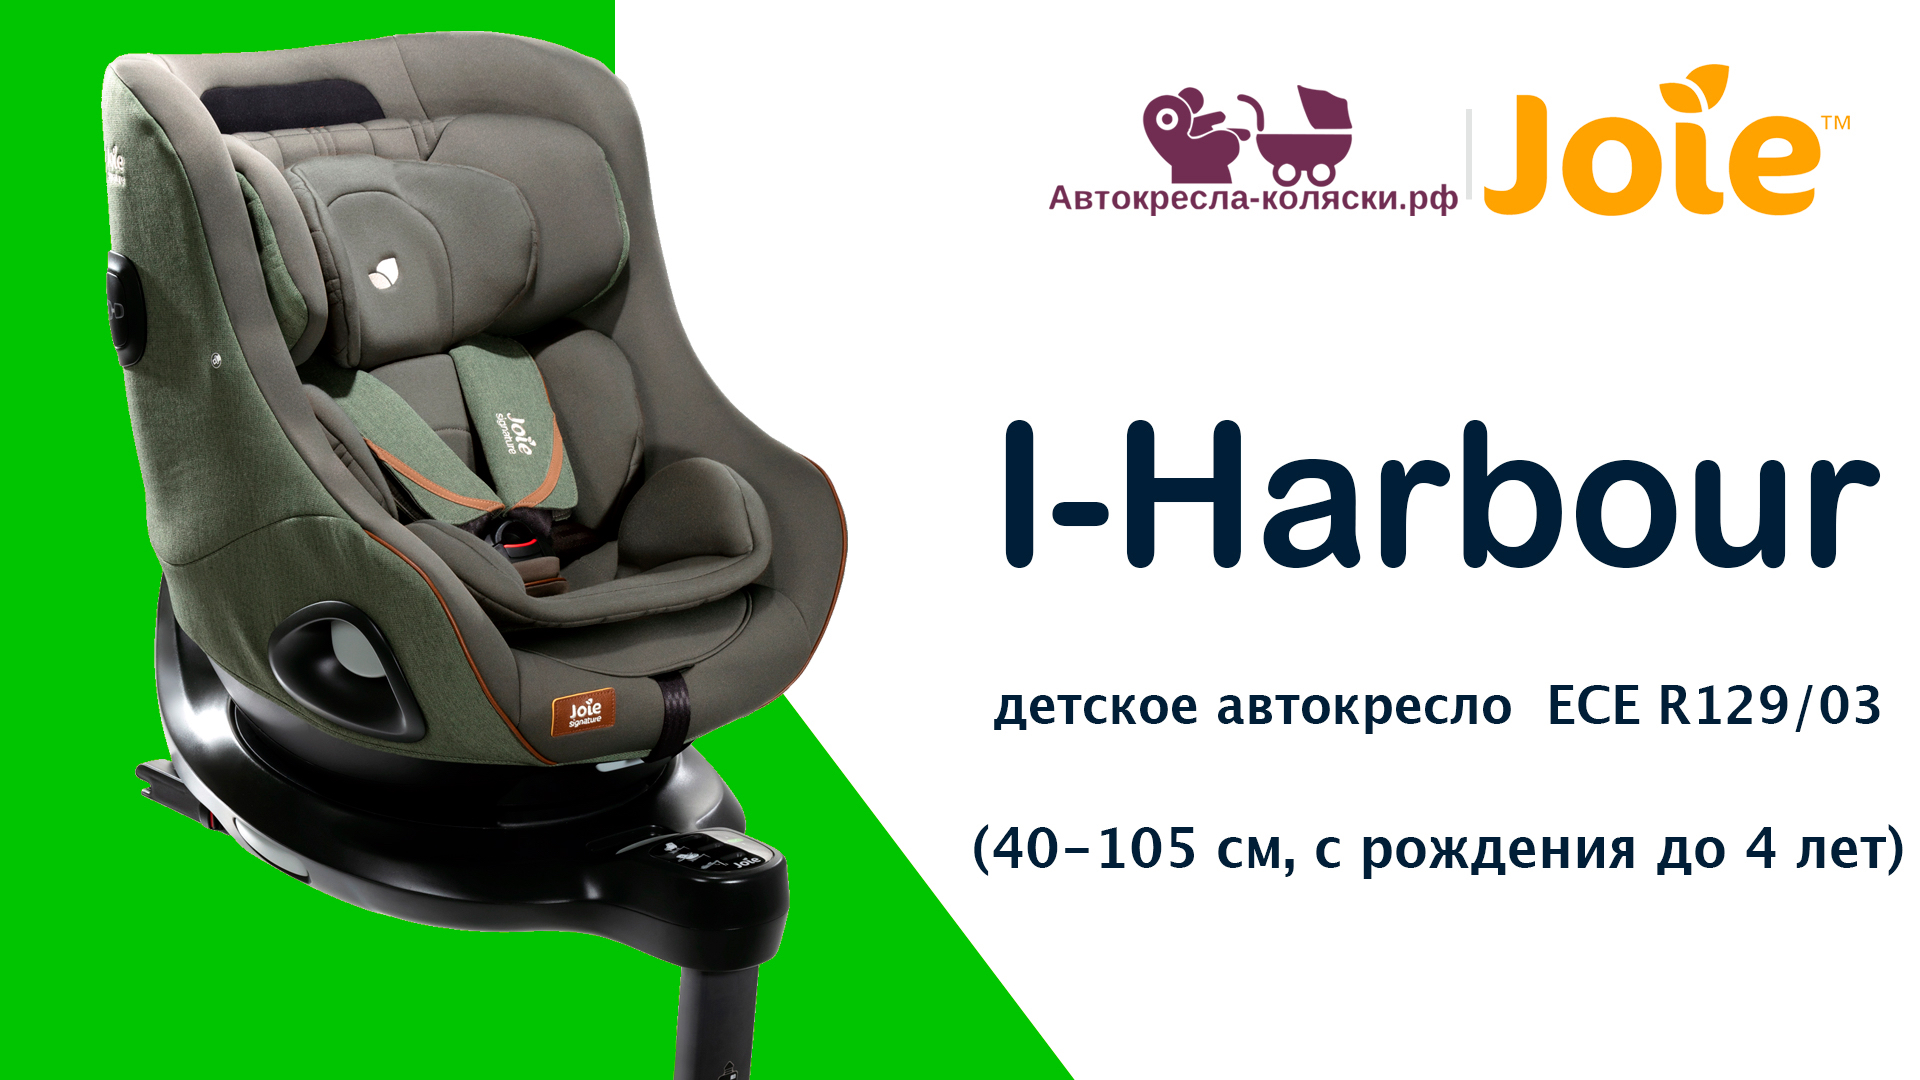 Joie I-Harbour™  |  ОБЗОР детского автокресла с рождения до 4 лет (40-105 см). Сертификат ECE R129.